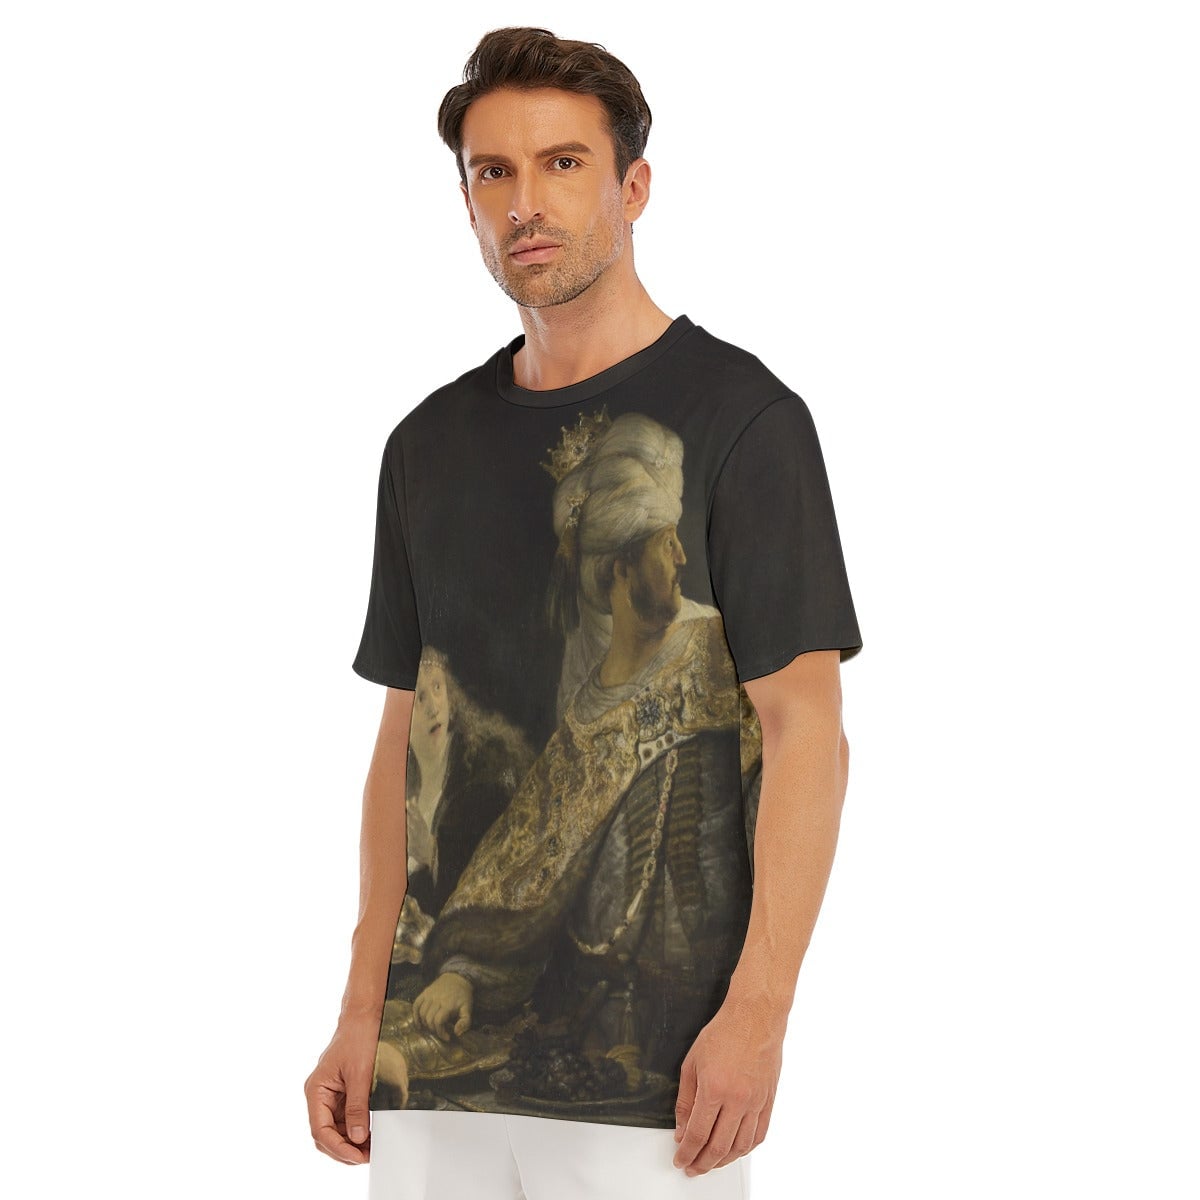 Rembrandt van Rijn’s Belshazzar’s Feast T-Shirt